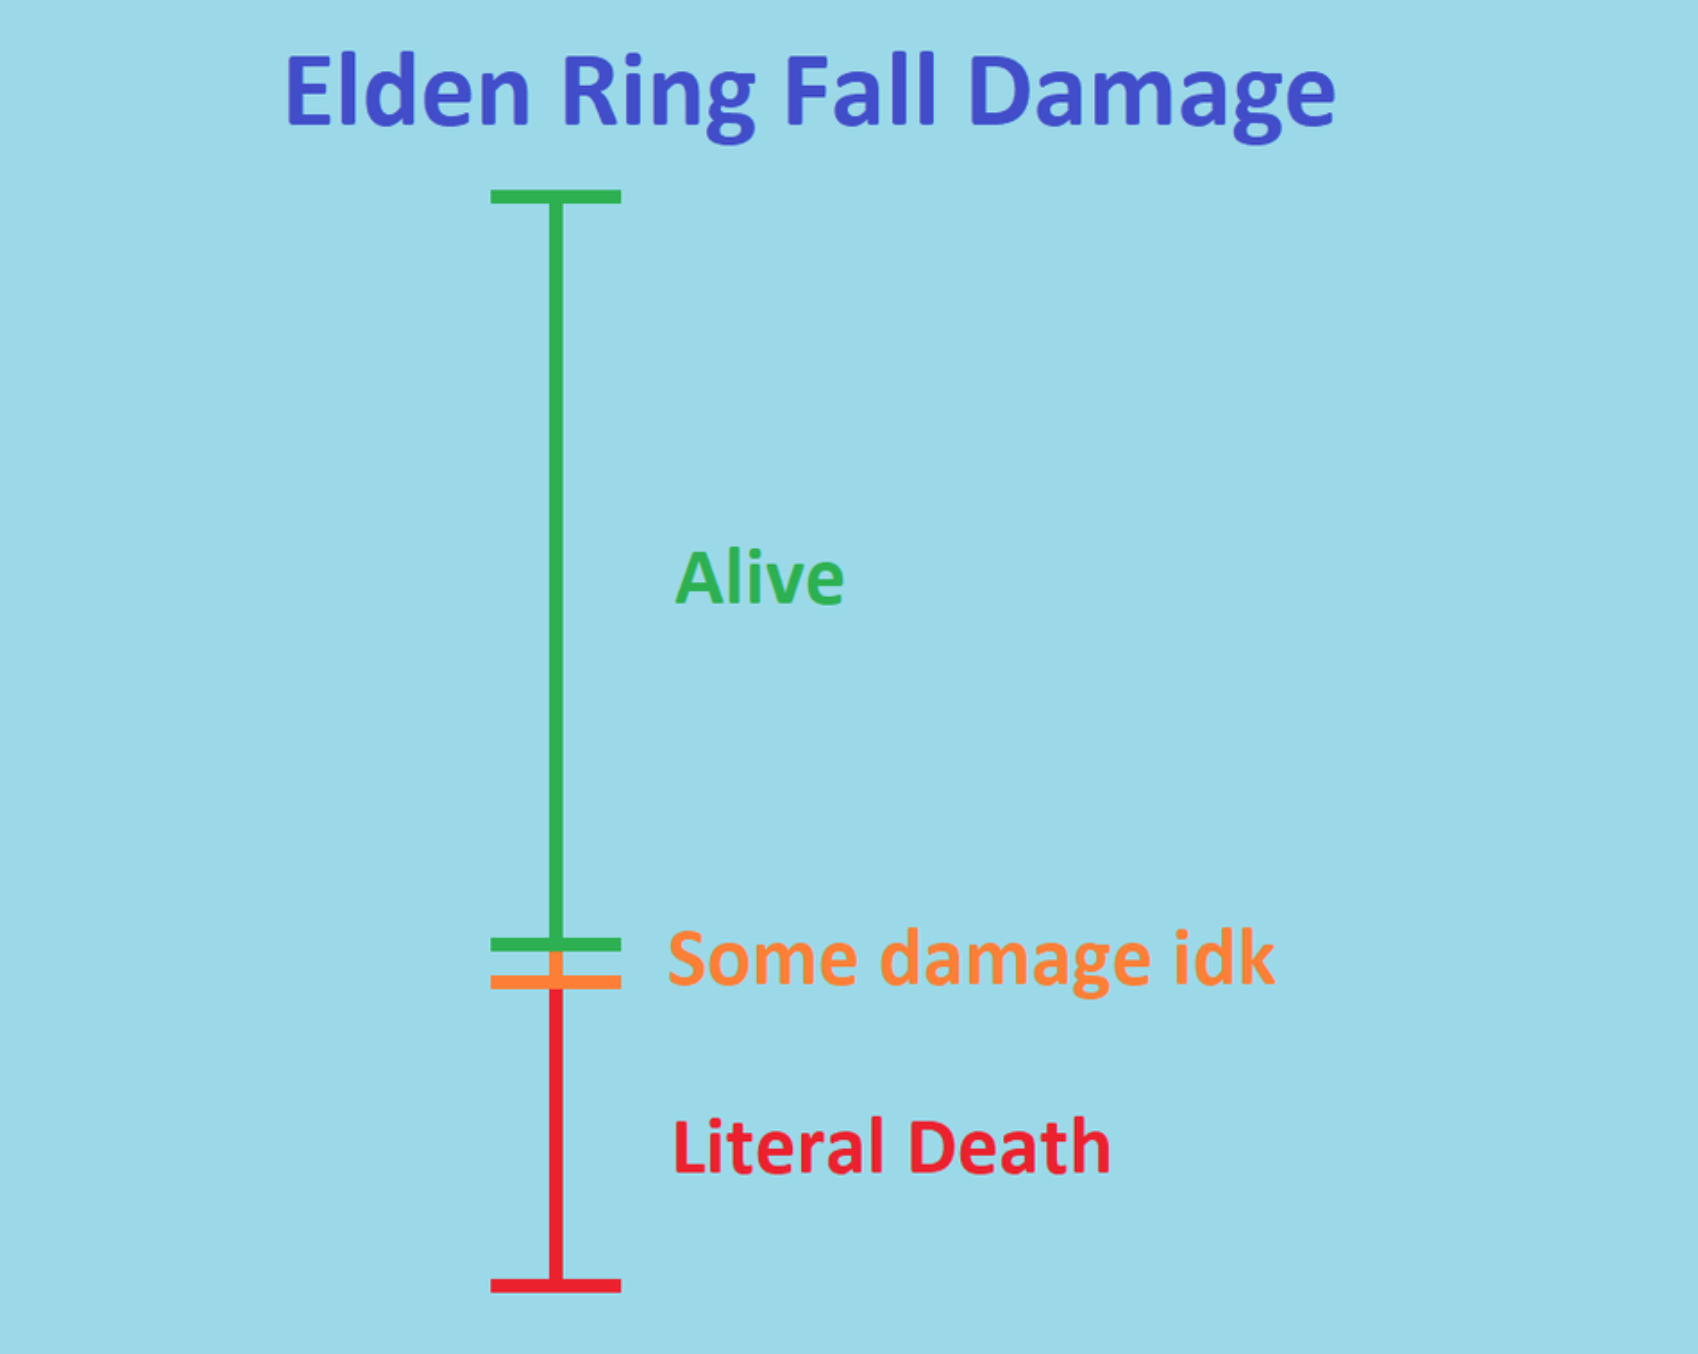 elden ring memes - angle - Elden Ring Fall Damage Alive Some damage idk 1 Literal Death